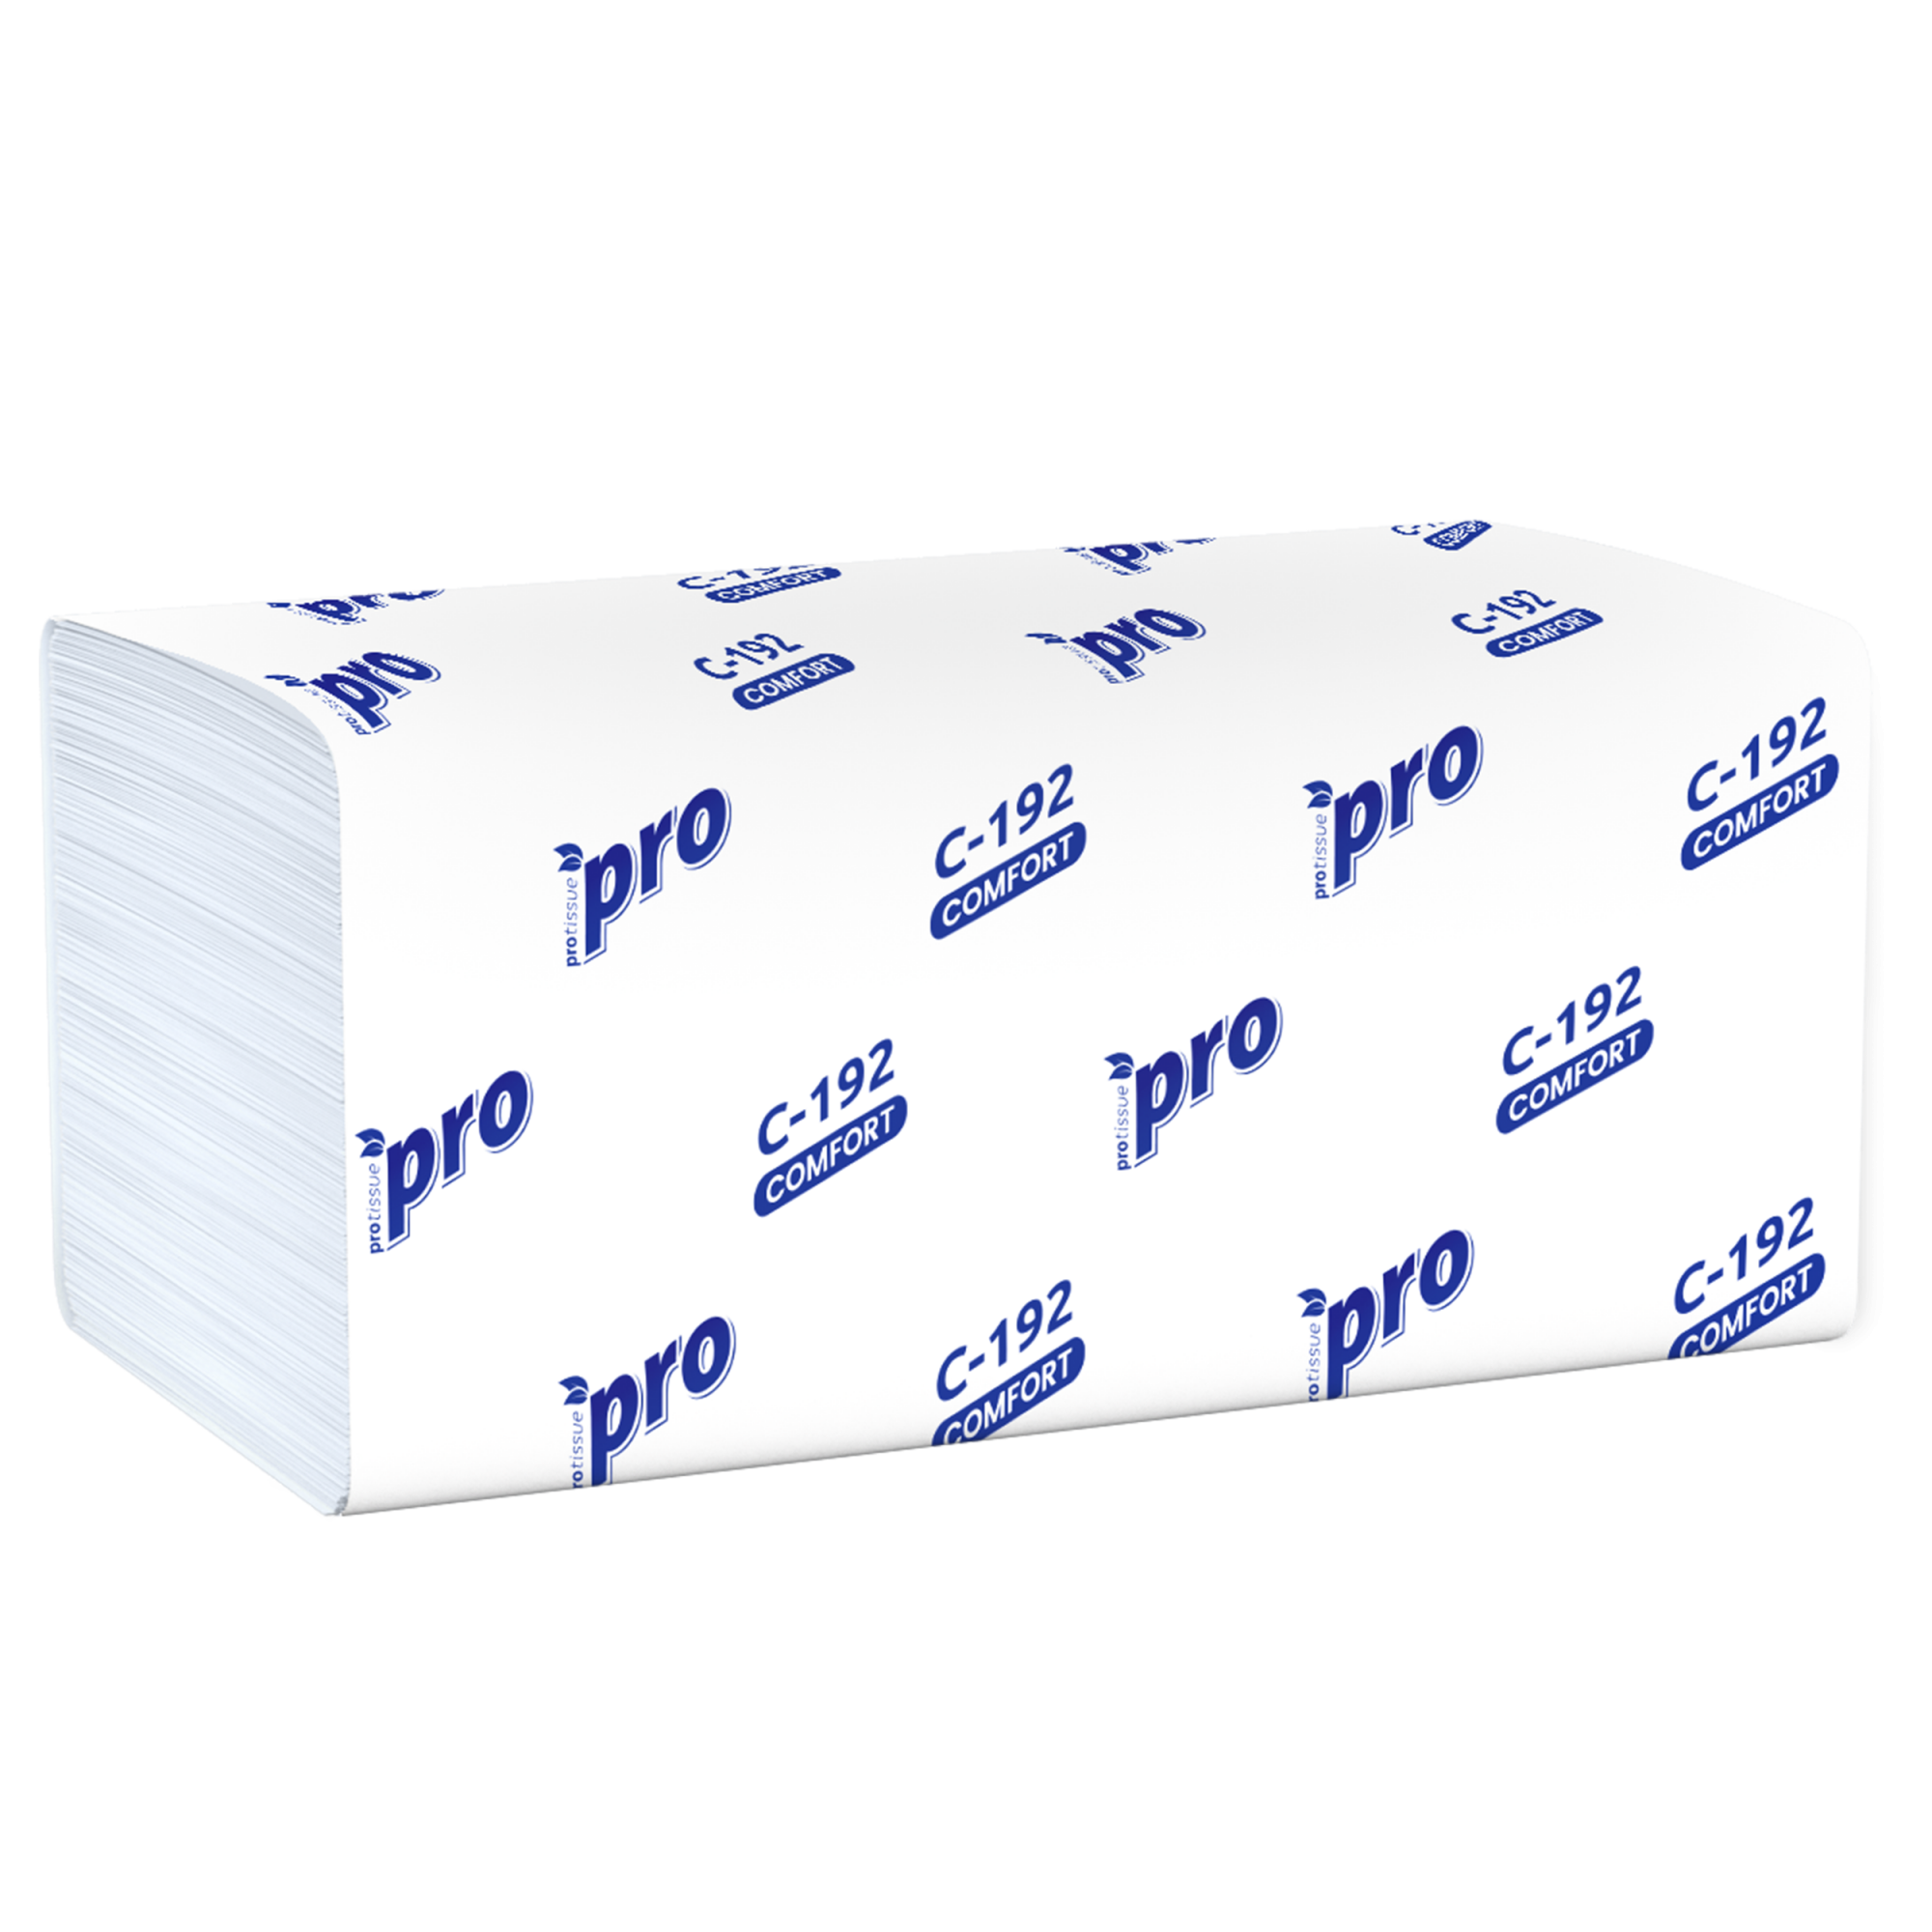 П л к 33. Полотенца бумажные Focus Premium v-сложения белые двухслойные 5049974. Бумажные полотенца protissue двухслойные 20 шт. Полотенца бумажные листовые protissue v-сложения (ZZ) 2х-сл, 200 листов, белые. Полотенца листовые v сложения 1сл.21х24 200л Belux.